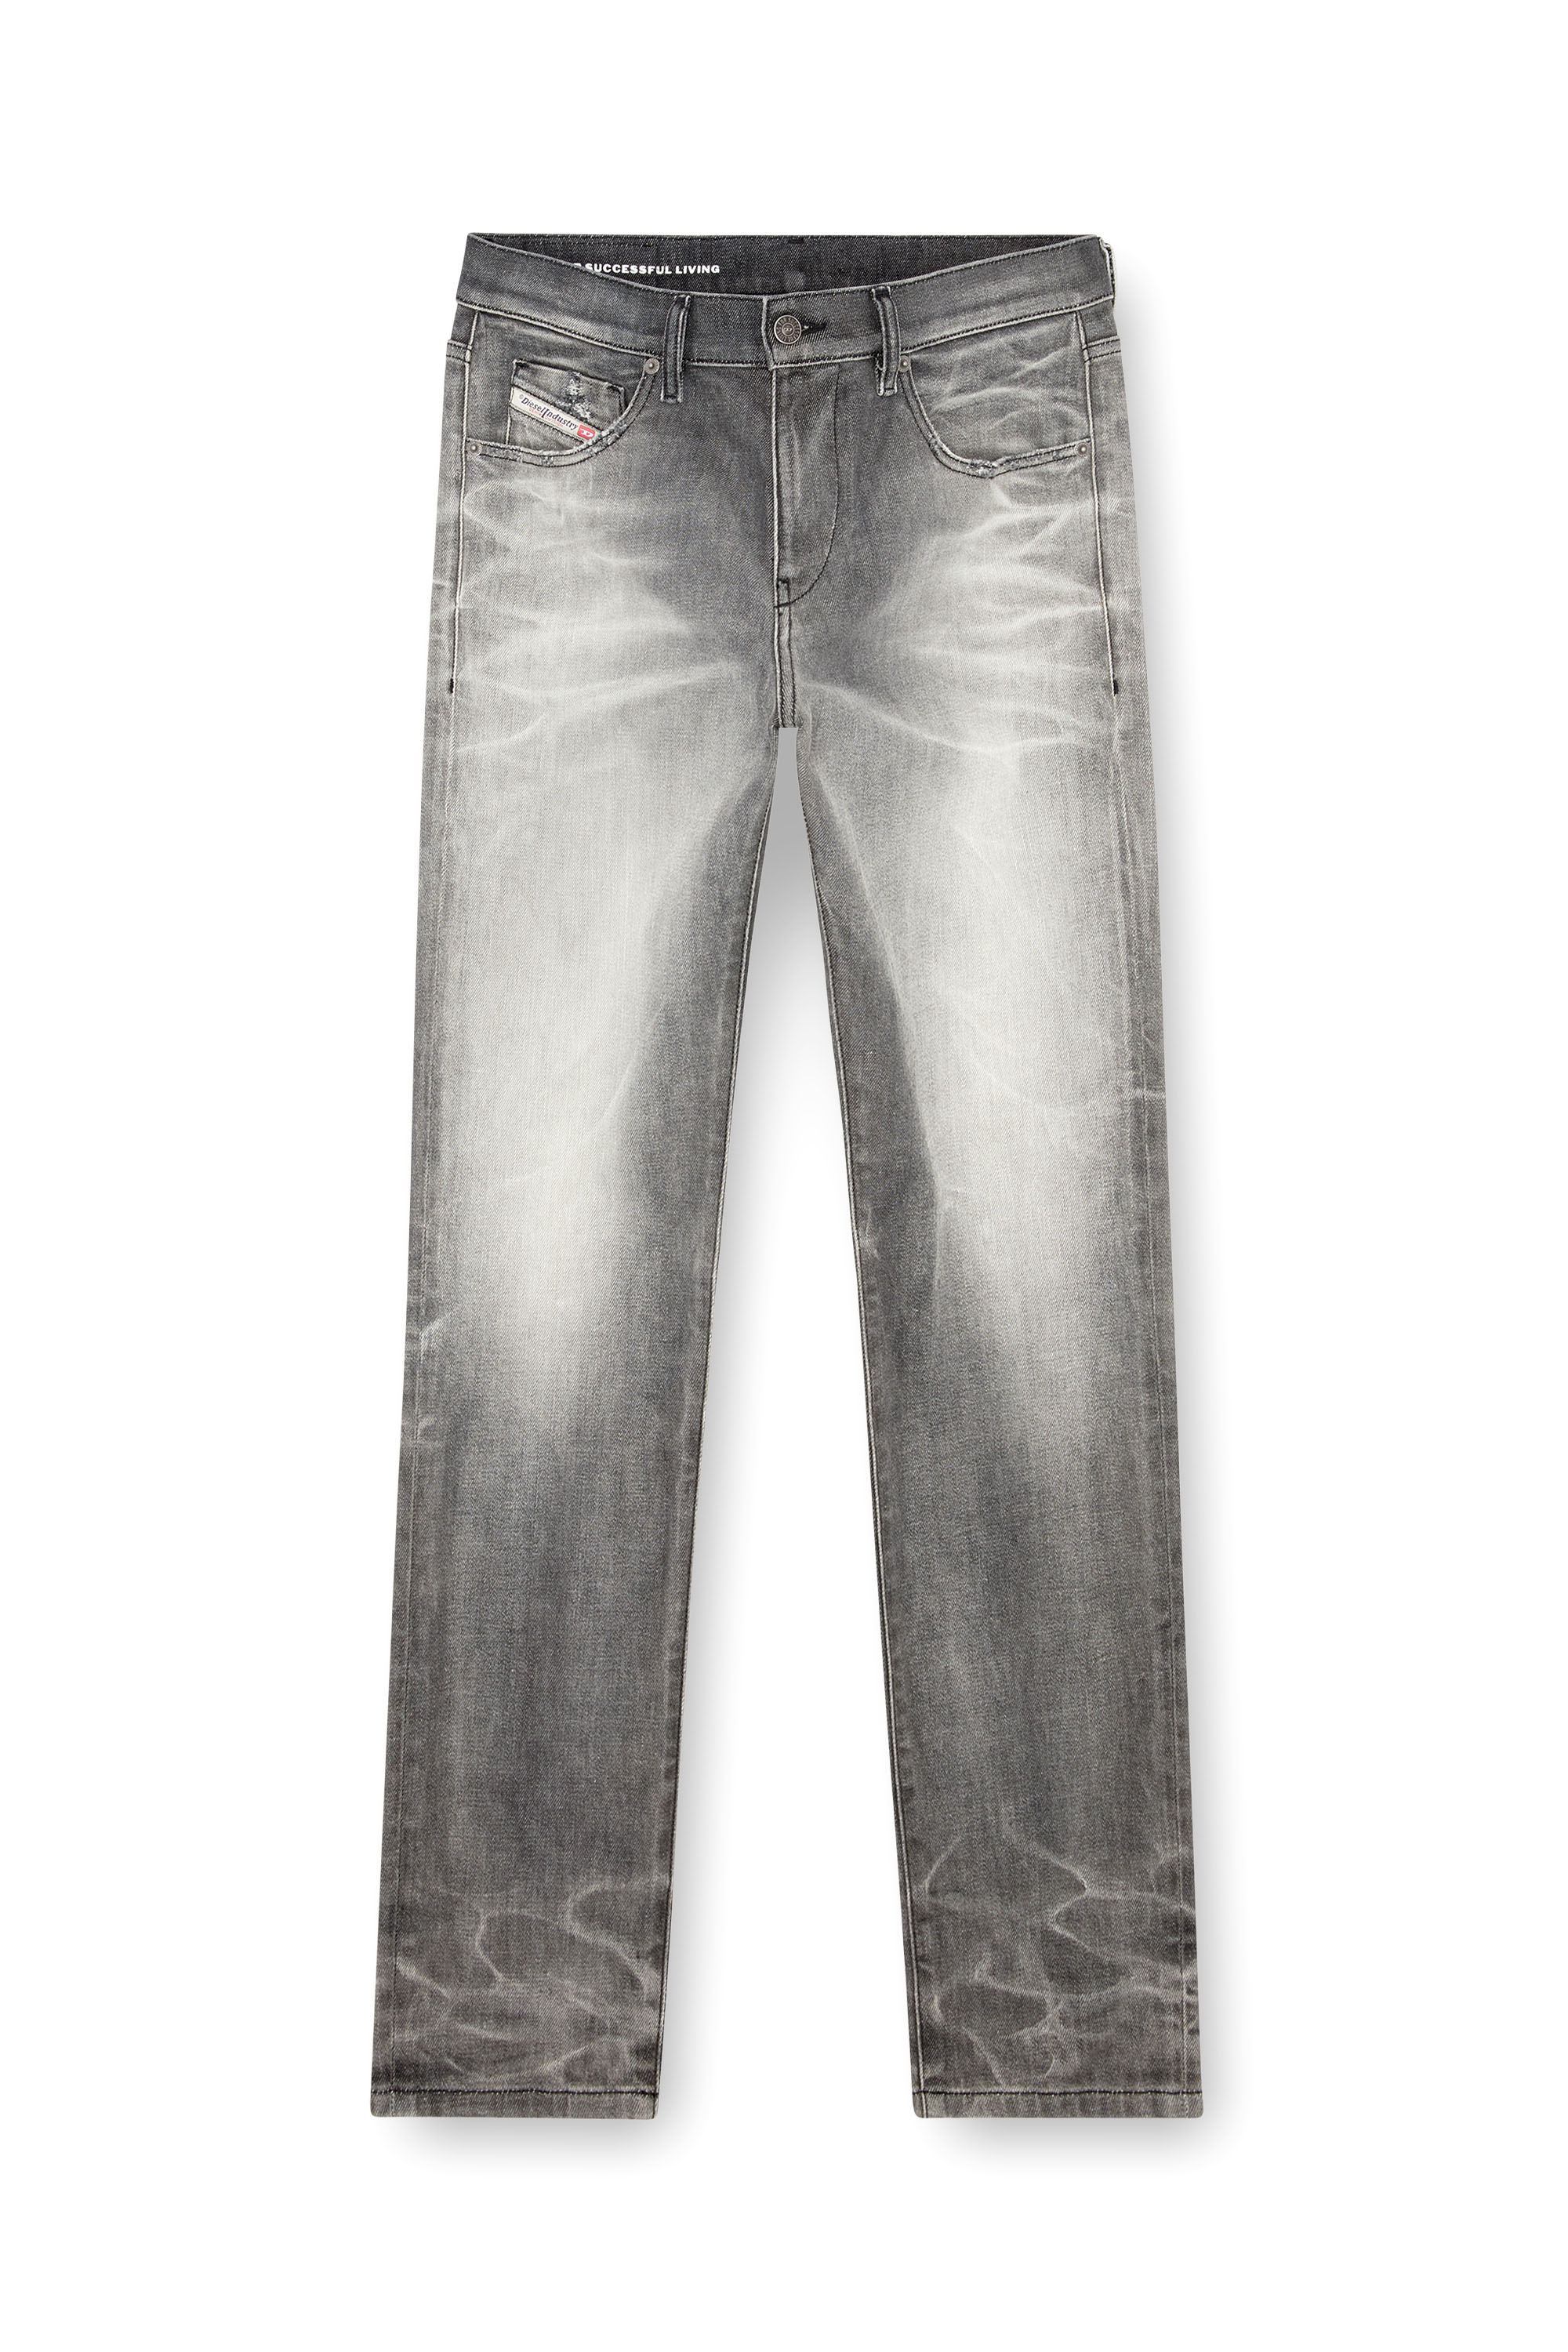 Diesel - Slim Jeans 2019 D-Strukt 09J58, Hombre Slim Jeans - 2019 D-Strukt in Gris - Image 3